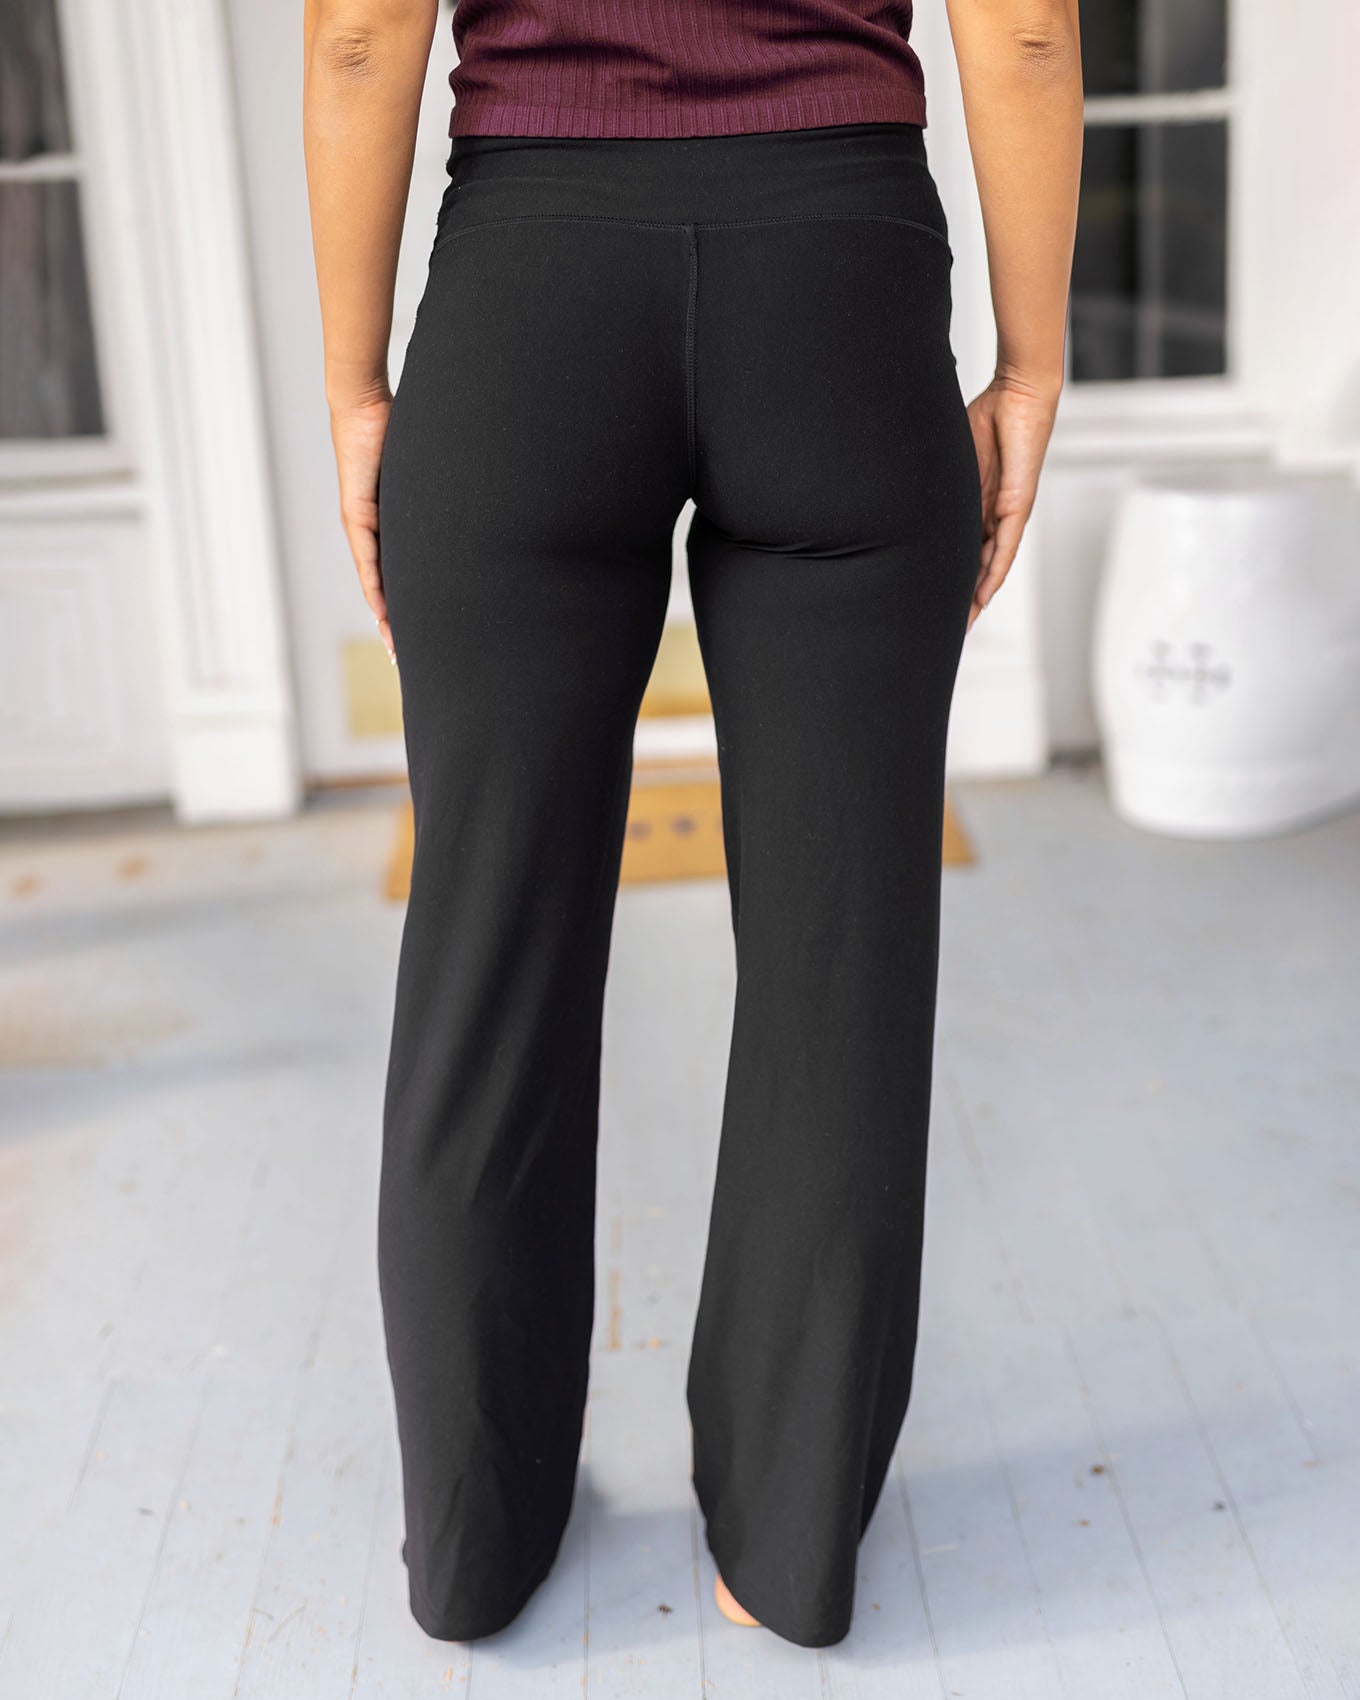  Side Pockets,Tall Womens Straight Leg Yoga Pants